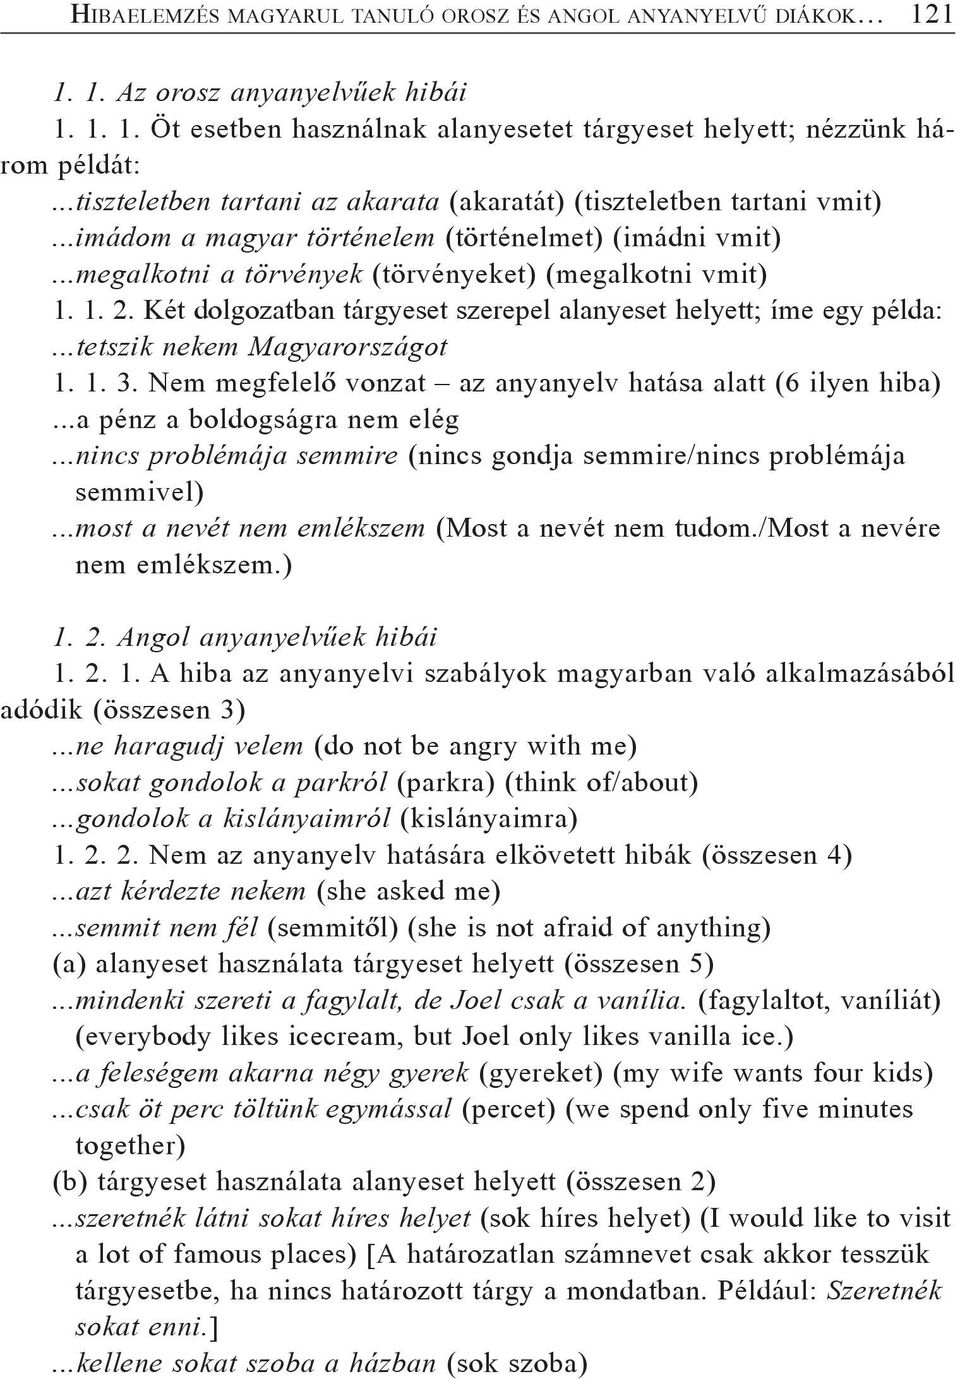 Két dolgozatban tárgyeset szerepel alanyeset helyett; íme egy példa:...tetszik nekem Magyarországot 1. 1. 3. Nem megfelelõ vonzat az anyanyelv hatása alatt (6 ilyen hiba).